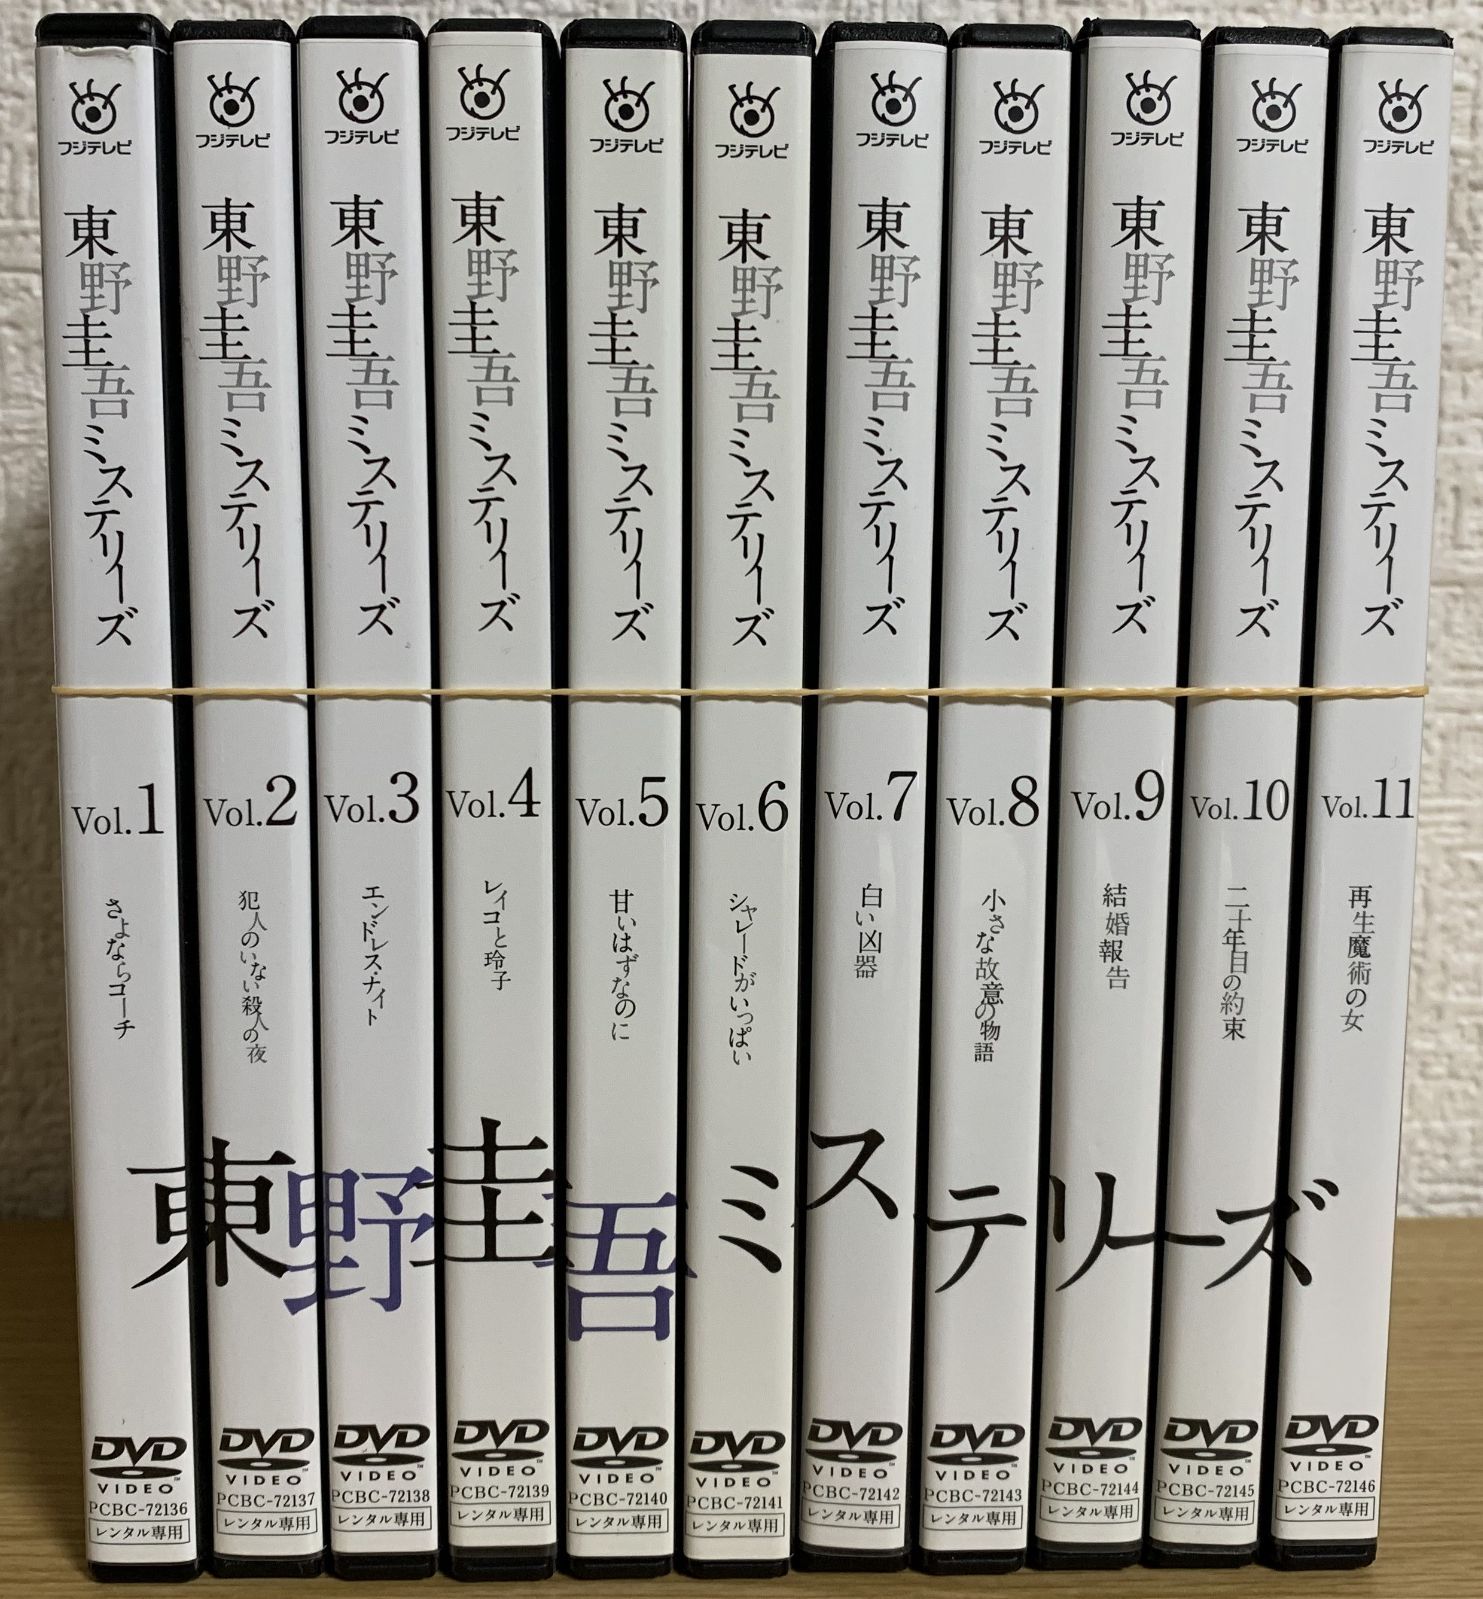 東野圭吾ミステリーズ DVD全巻セット - メルカリ